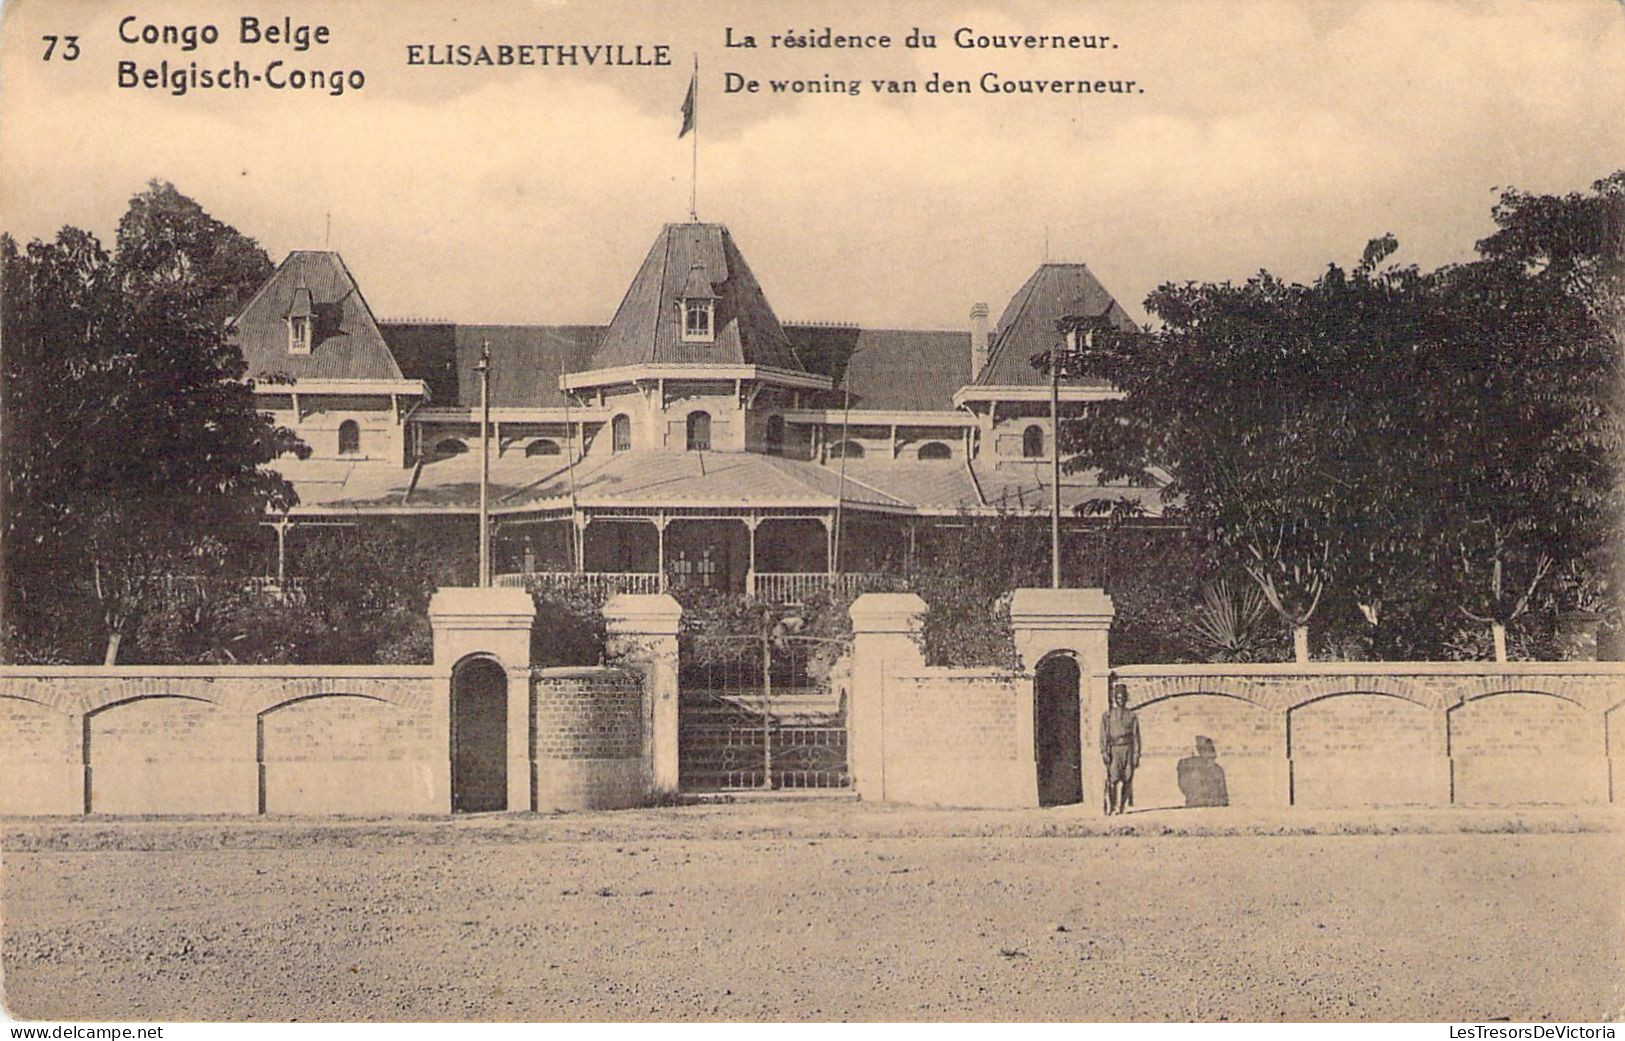 CONGO BELGE - Elisabethville - La Résidence Du Gouverneur - Carte Postale Ancienne - Congo Belge